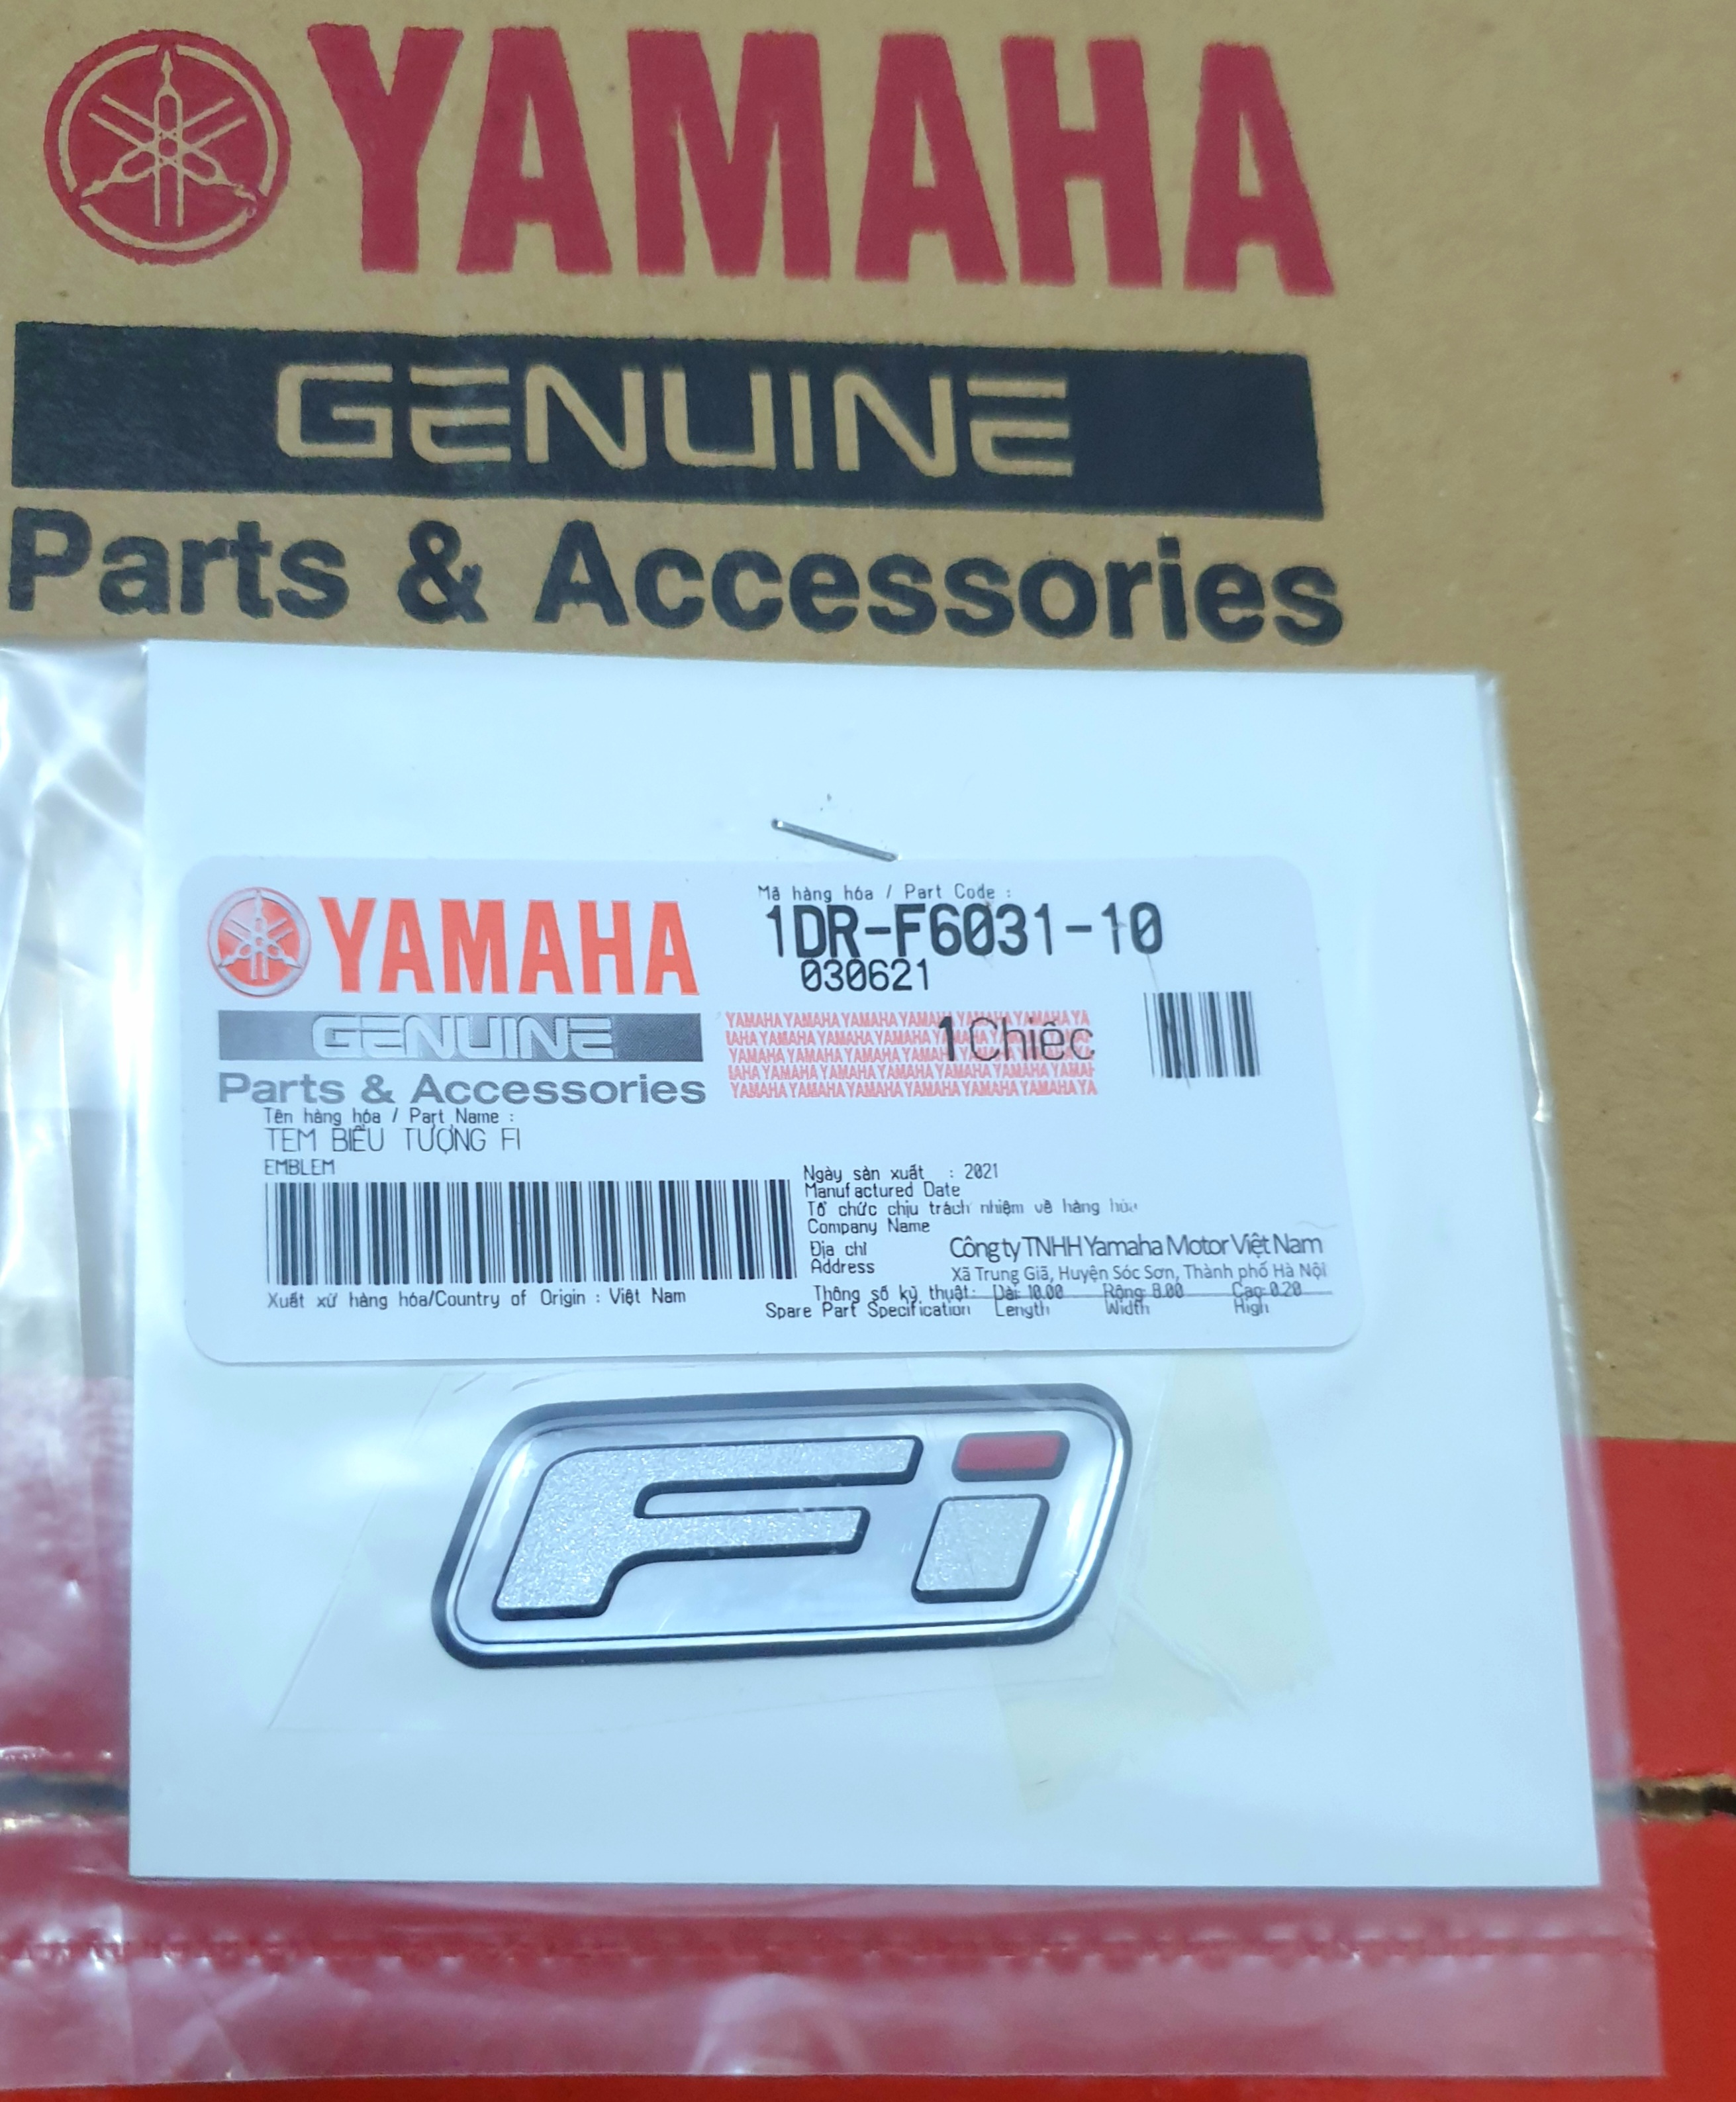 Cập nhật ngay với bộ sưu tập tem chữ Yamaha giá rẻ và bán chạy nhất trong tháng 4/